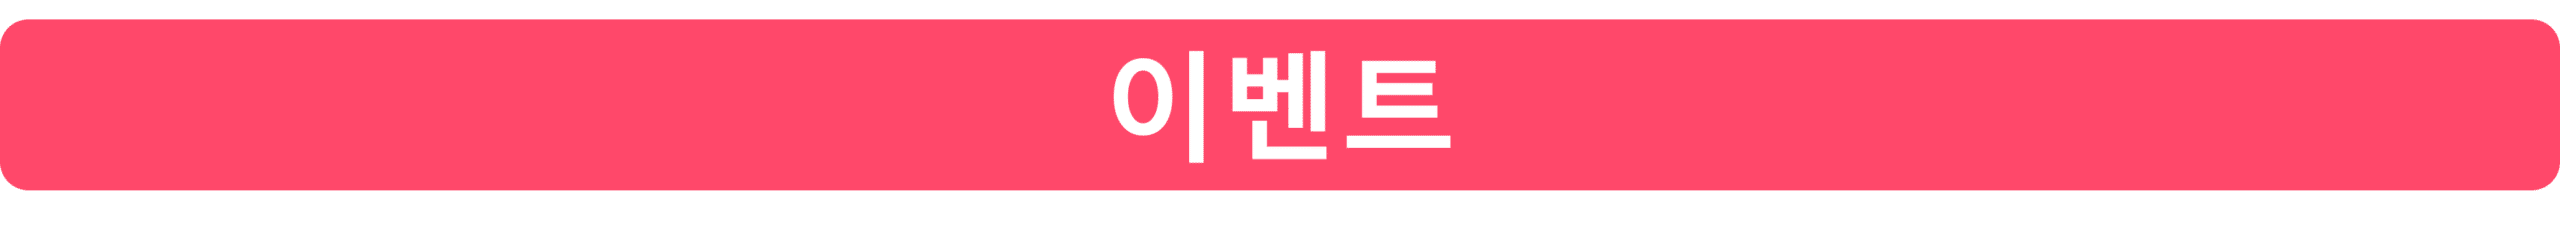 서울 마포 마사지 벨라테라피 홍대점 이벤트